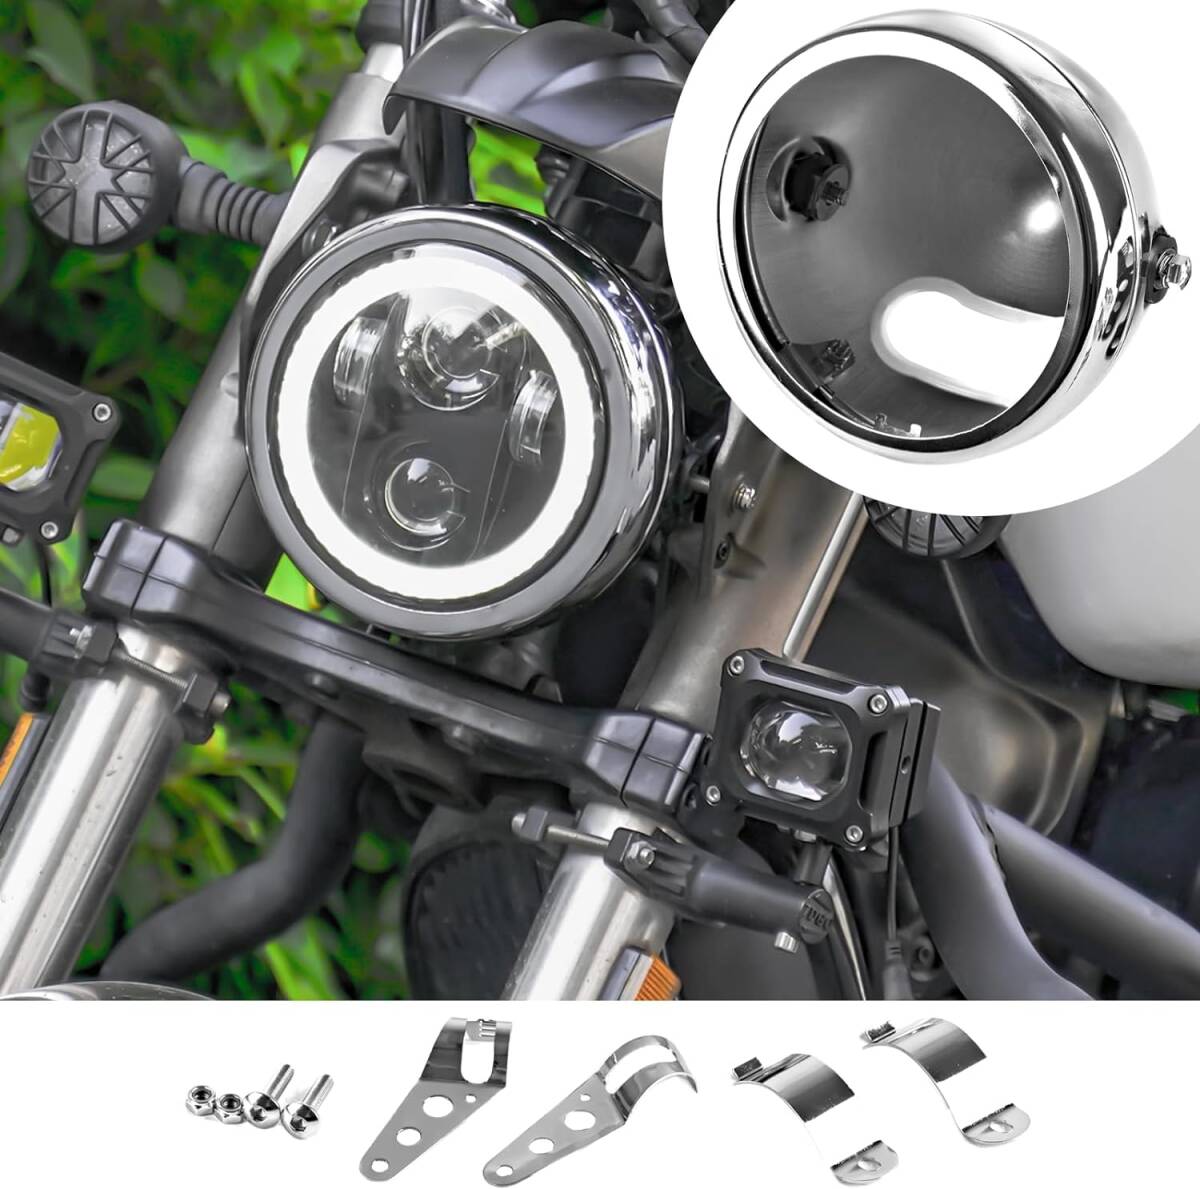 Vancroser 汎用 5.75インチ ヘッドライト ハウジング オートバイ 用 ヘッドライト交換ハウジング 固定用 ハウジングキット 丸型 _画像1